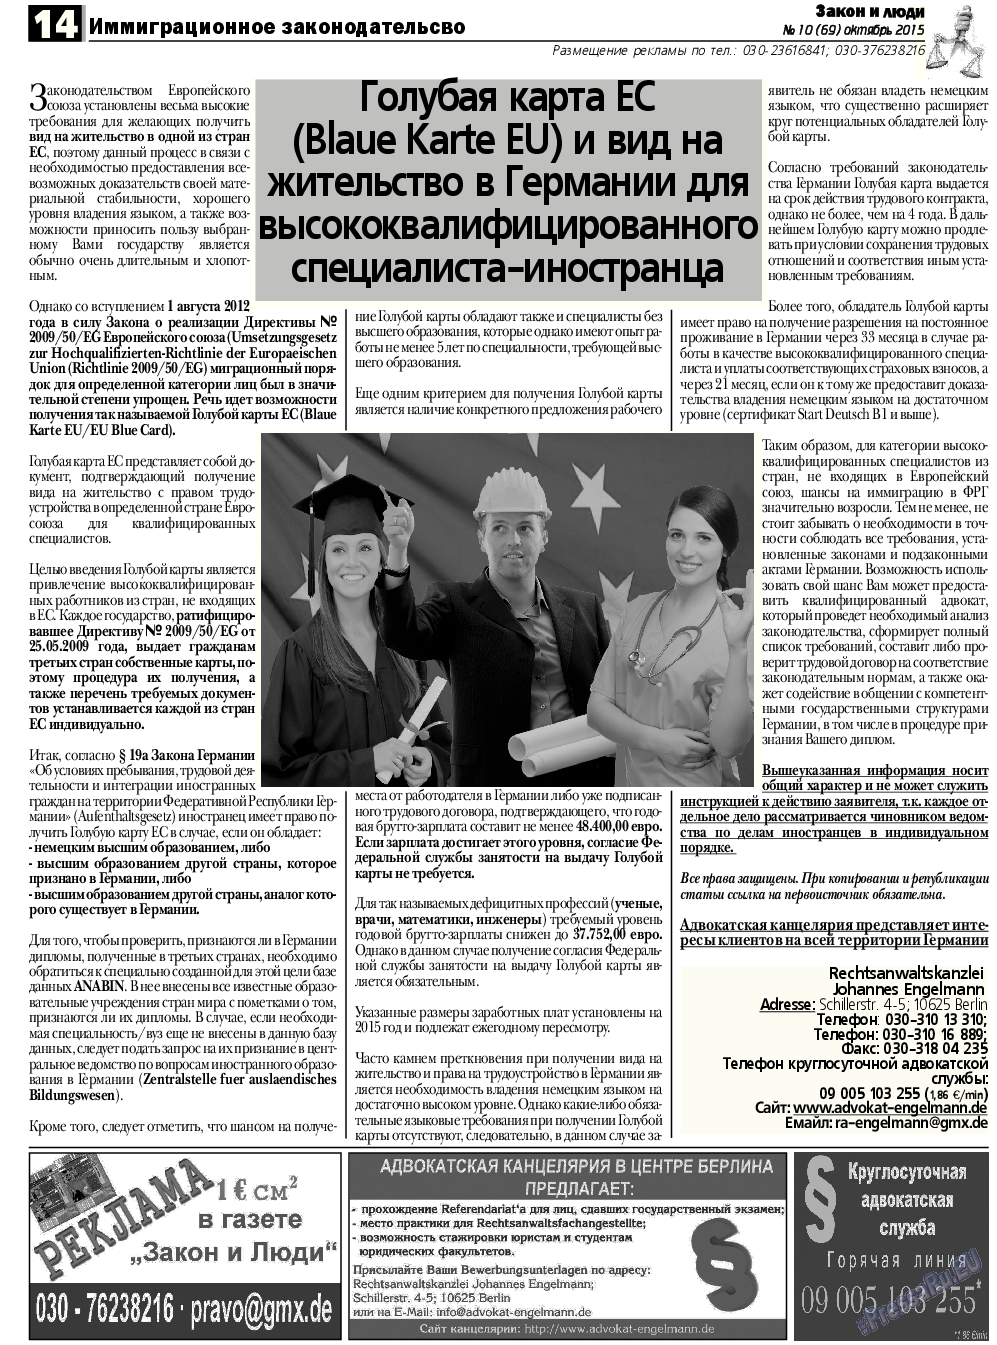 Закон и люди, газета. 2015 №10 стр.14